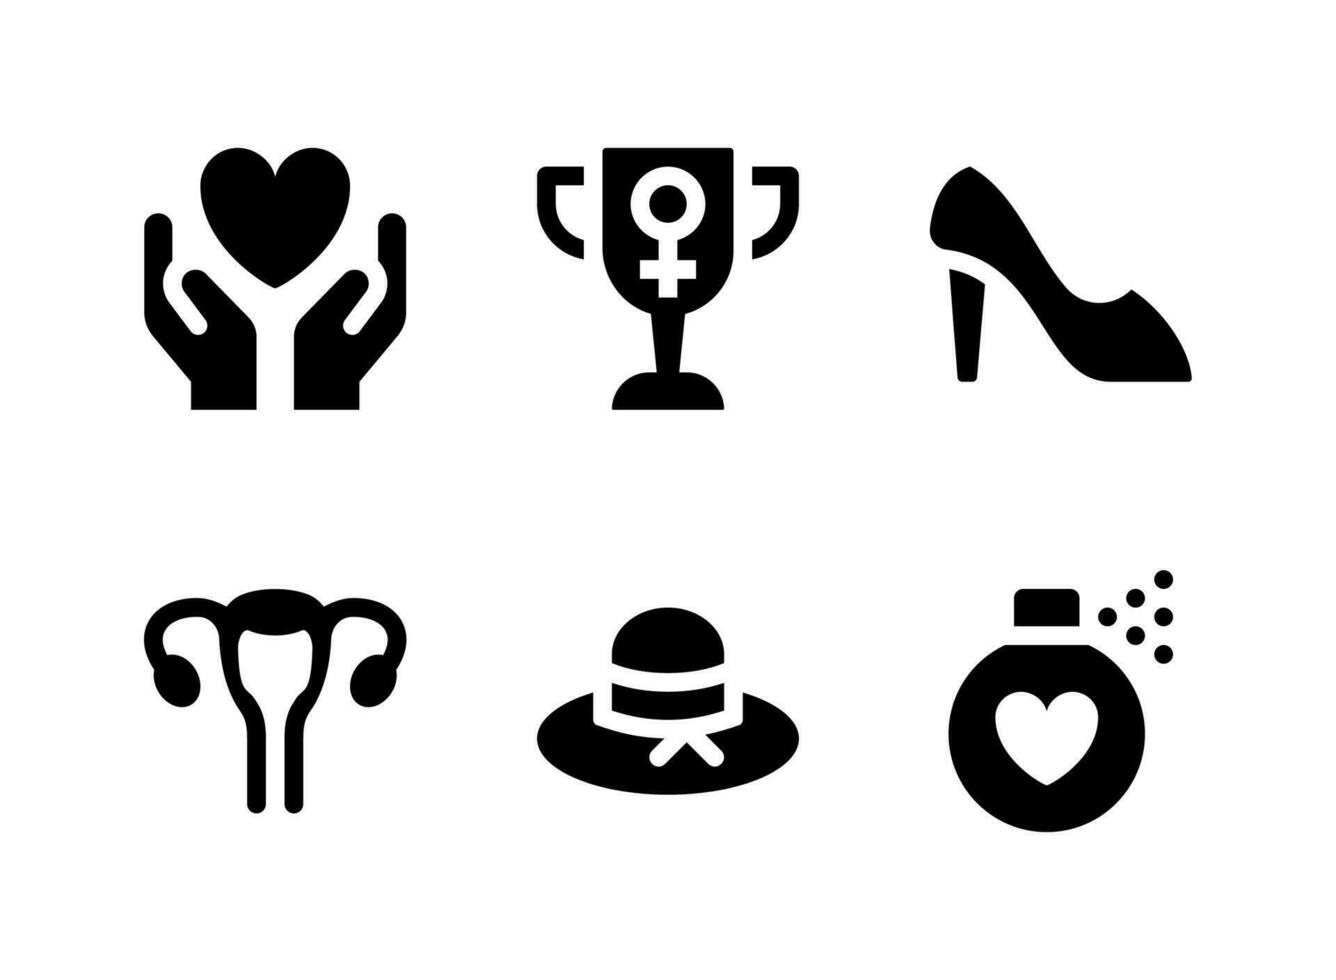 semplice set di icone solide vettoriali relative al giorno delle donne. contiene icone come cura, trofeo, tacco alto, cappello da donna e altro ancora.